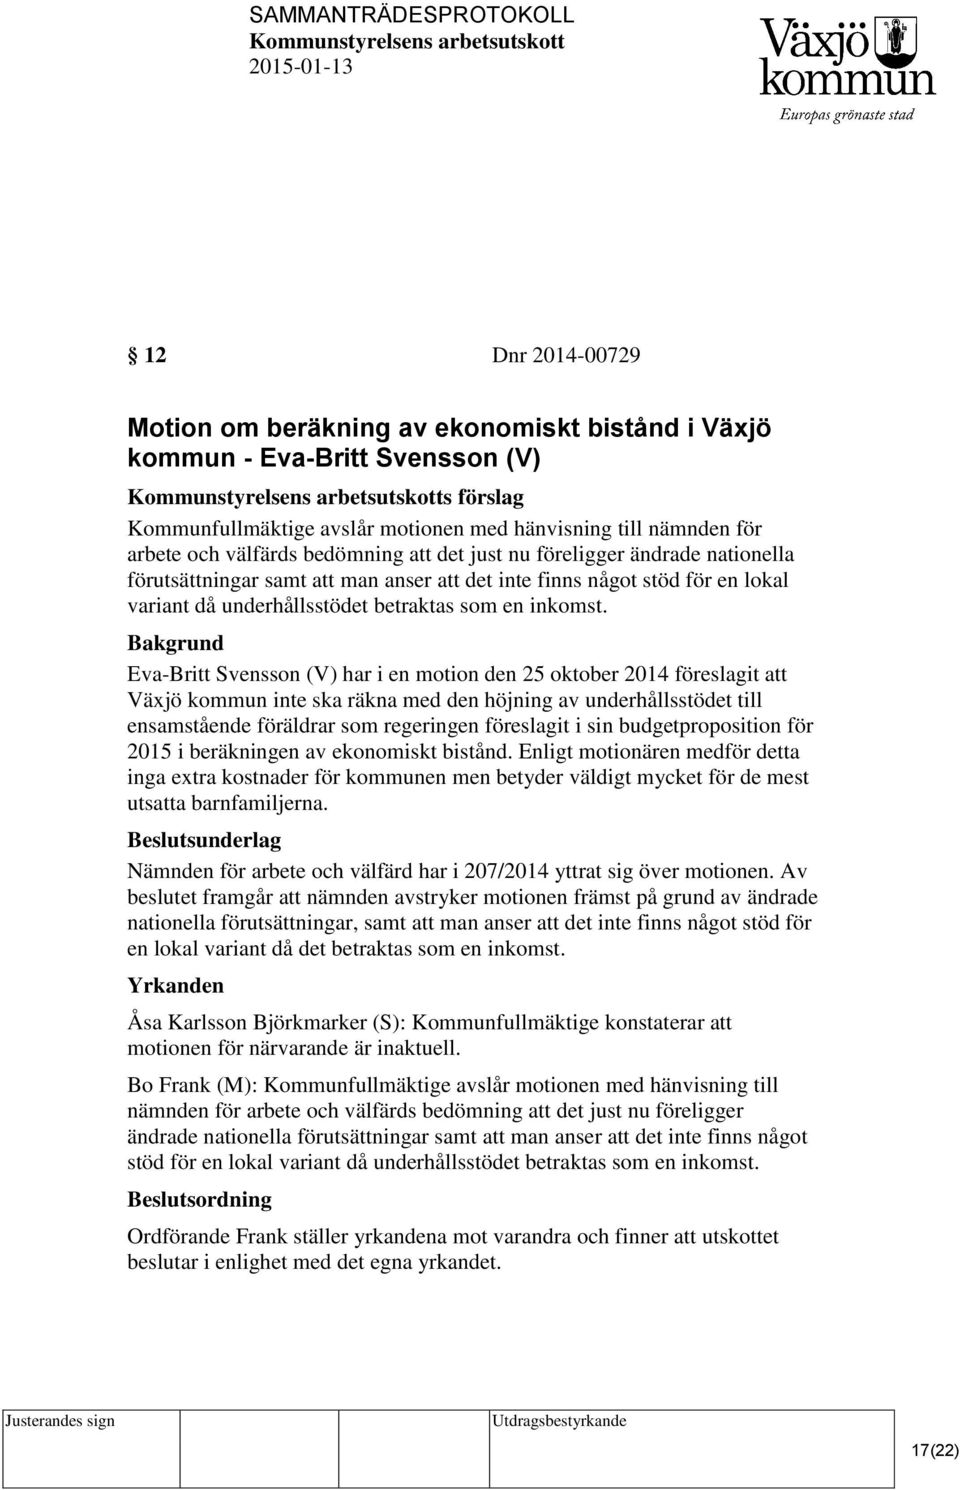 Eva-Britt Svensson (V) har i en motion den 25 oktober 2014 föreslagit att Växjö kommun inte ska räkna med den höjning av underhållsstödet till ensamstående föräldrar som regeringen föreslagit i sin